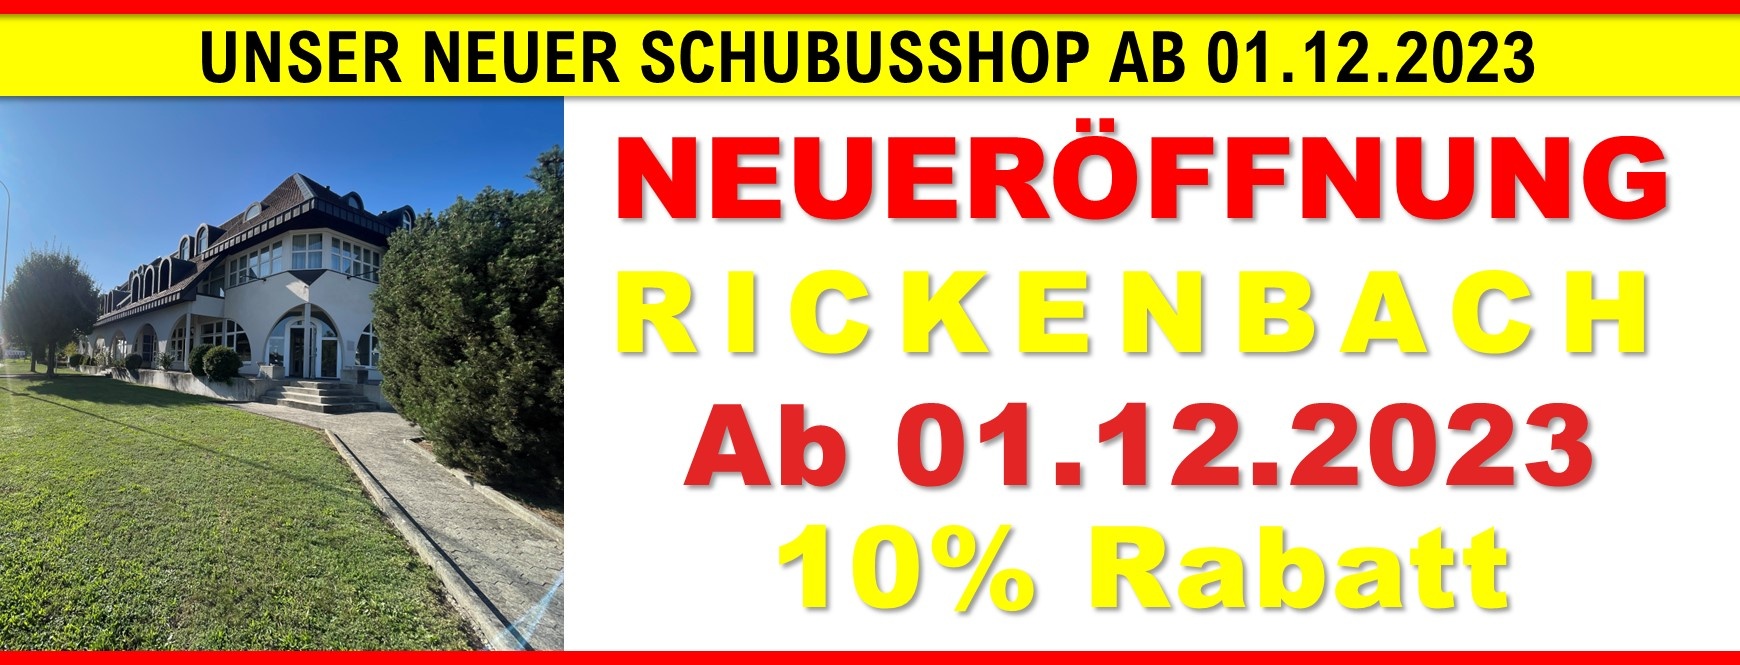 Rickenbach Neuereröffnung 4